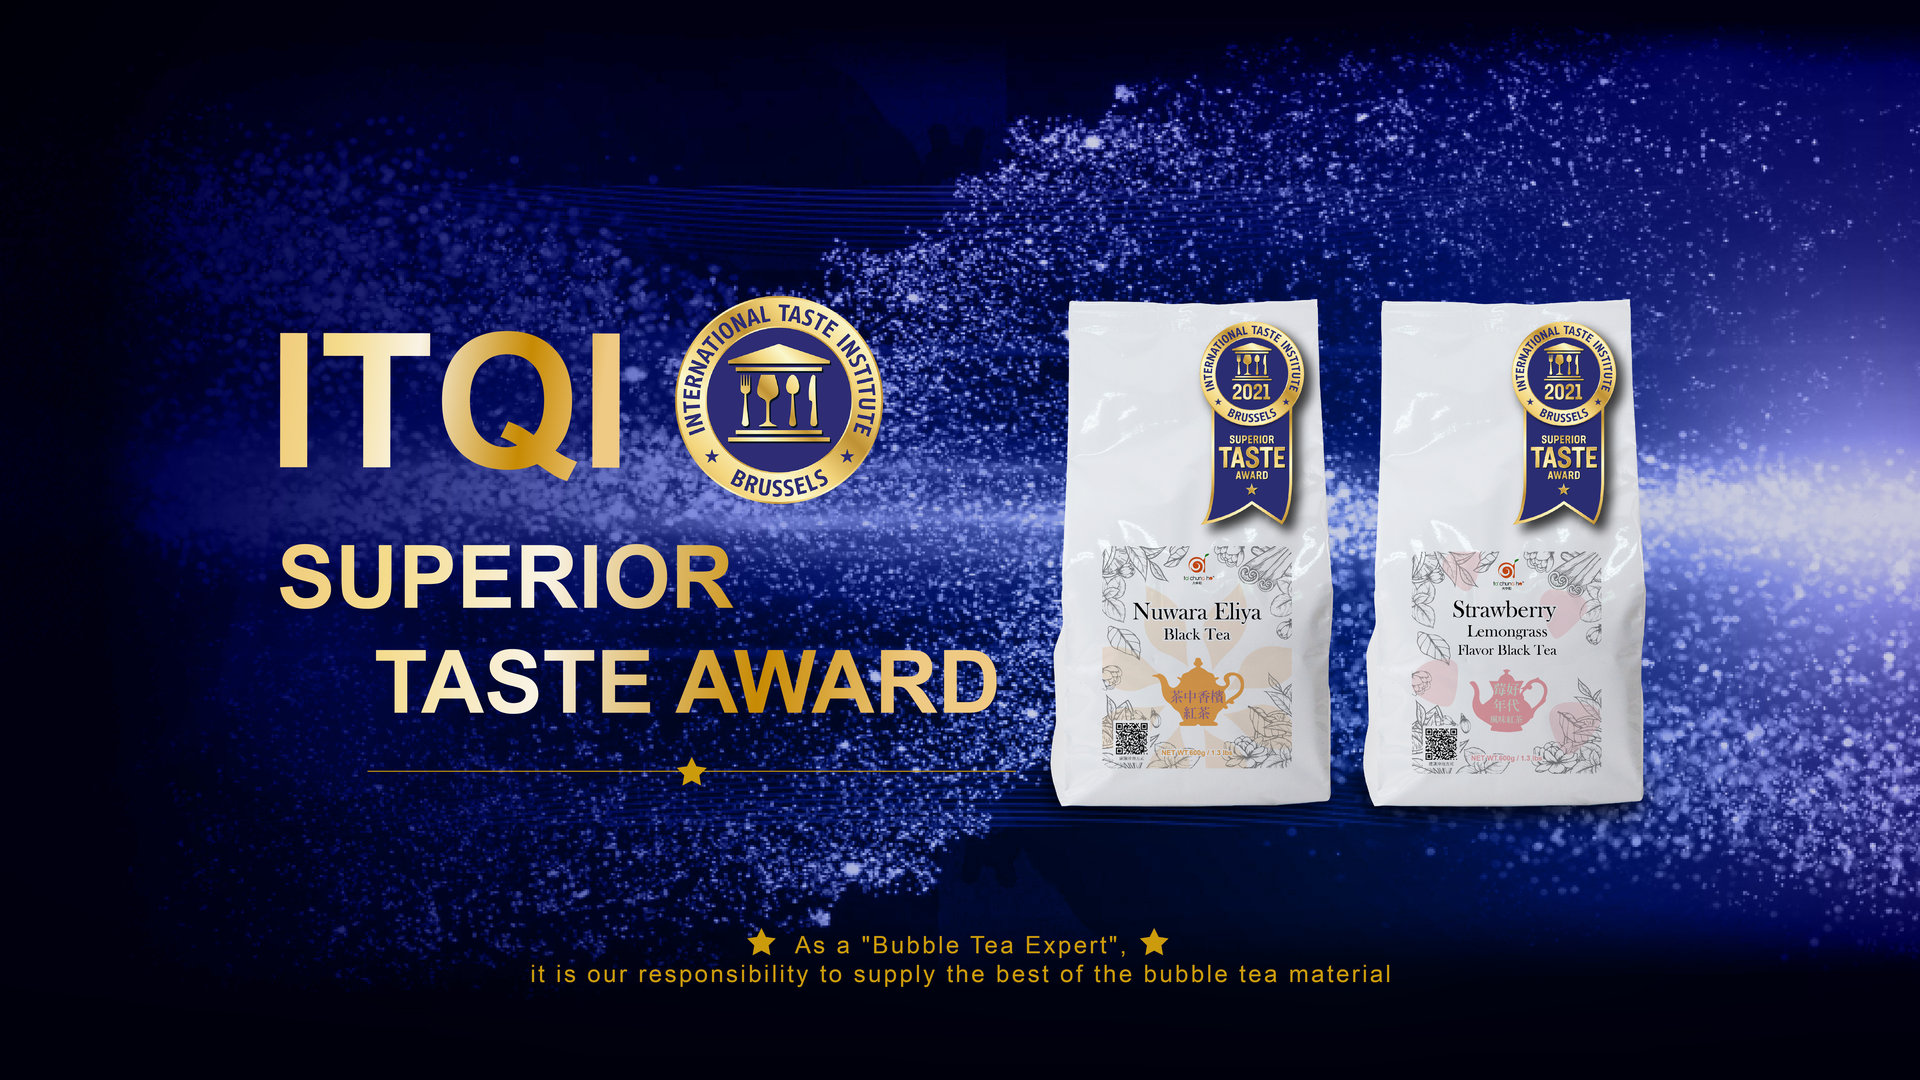 【Won 2021 Superior Taste Award of International Taste Institute_iTQi】